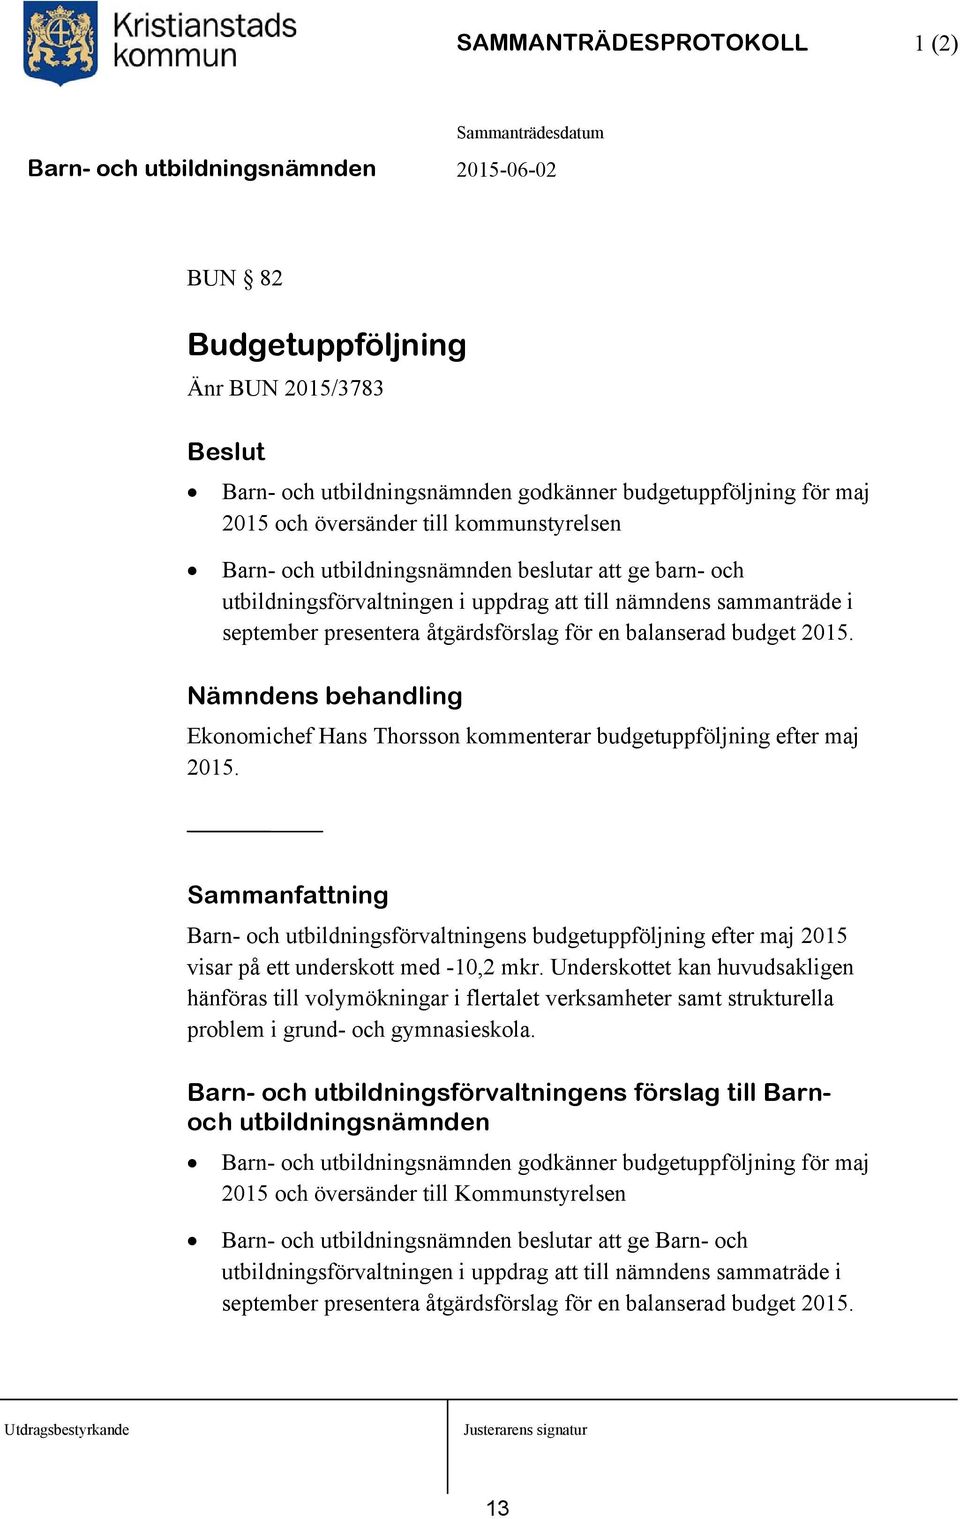 Nämndens behandling Ekonomichef Hans Thorsson kommenterar budgetuppföljning efter maj 2015. Barn- och utbildningsförvaltningens budgetuppföljning efter maj 2015 visar på ett underskott med -10,2 mkr.